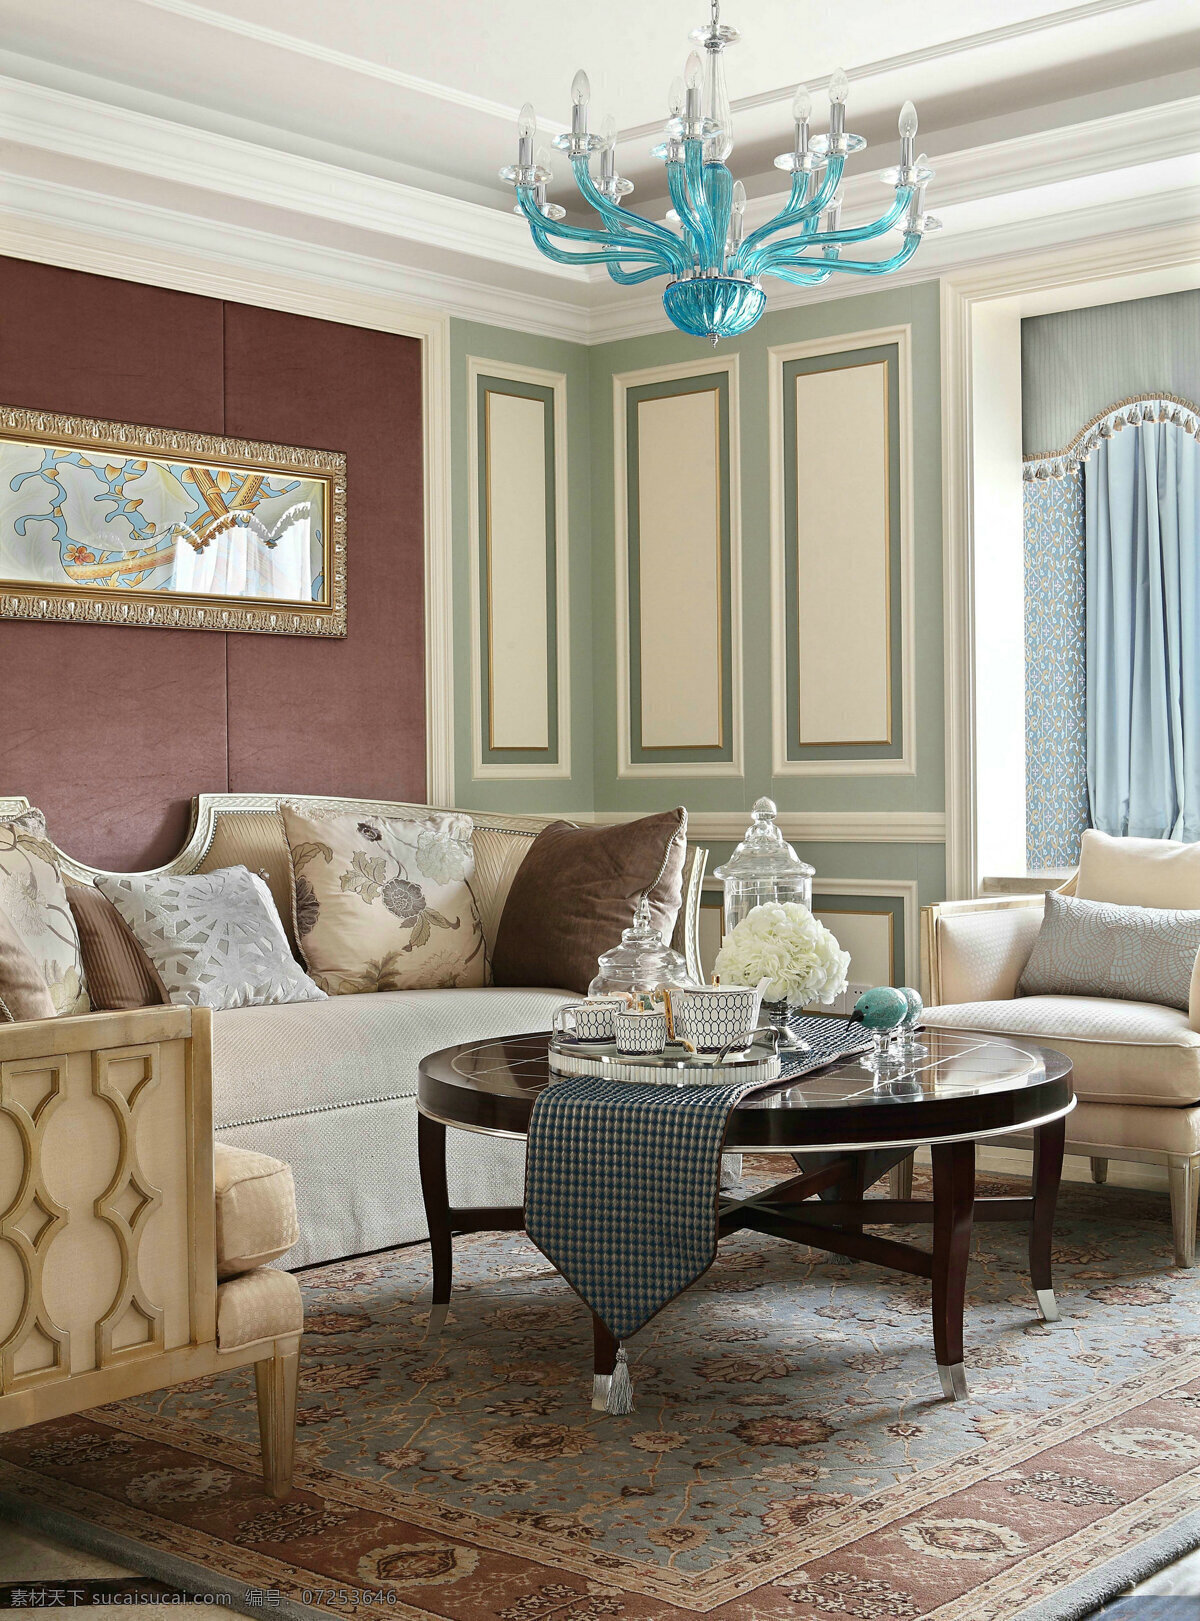 现代 时尚 欧式 客厅 创意 吊灯 装饰装修 效果图 客厅装修 茶几 创意吊灯 蓝色 个性